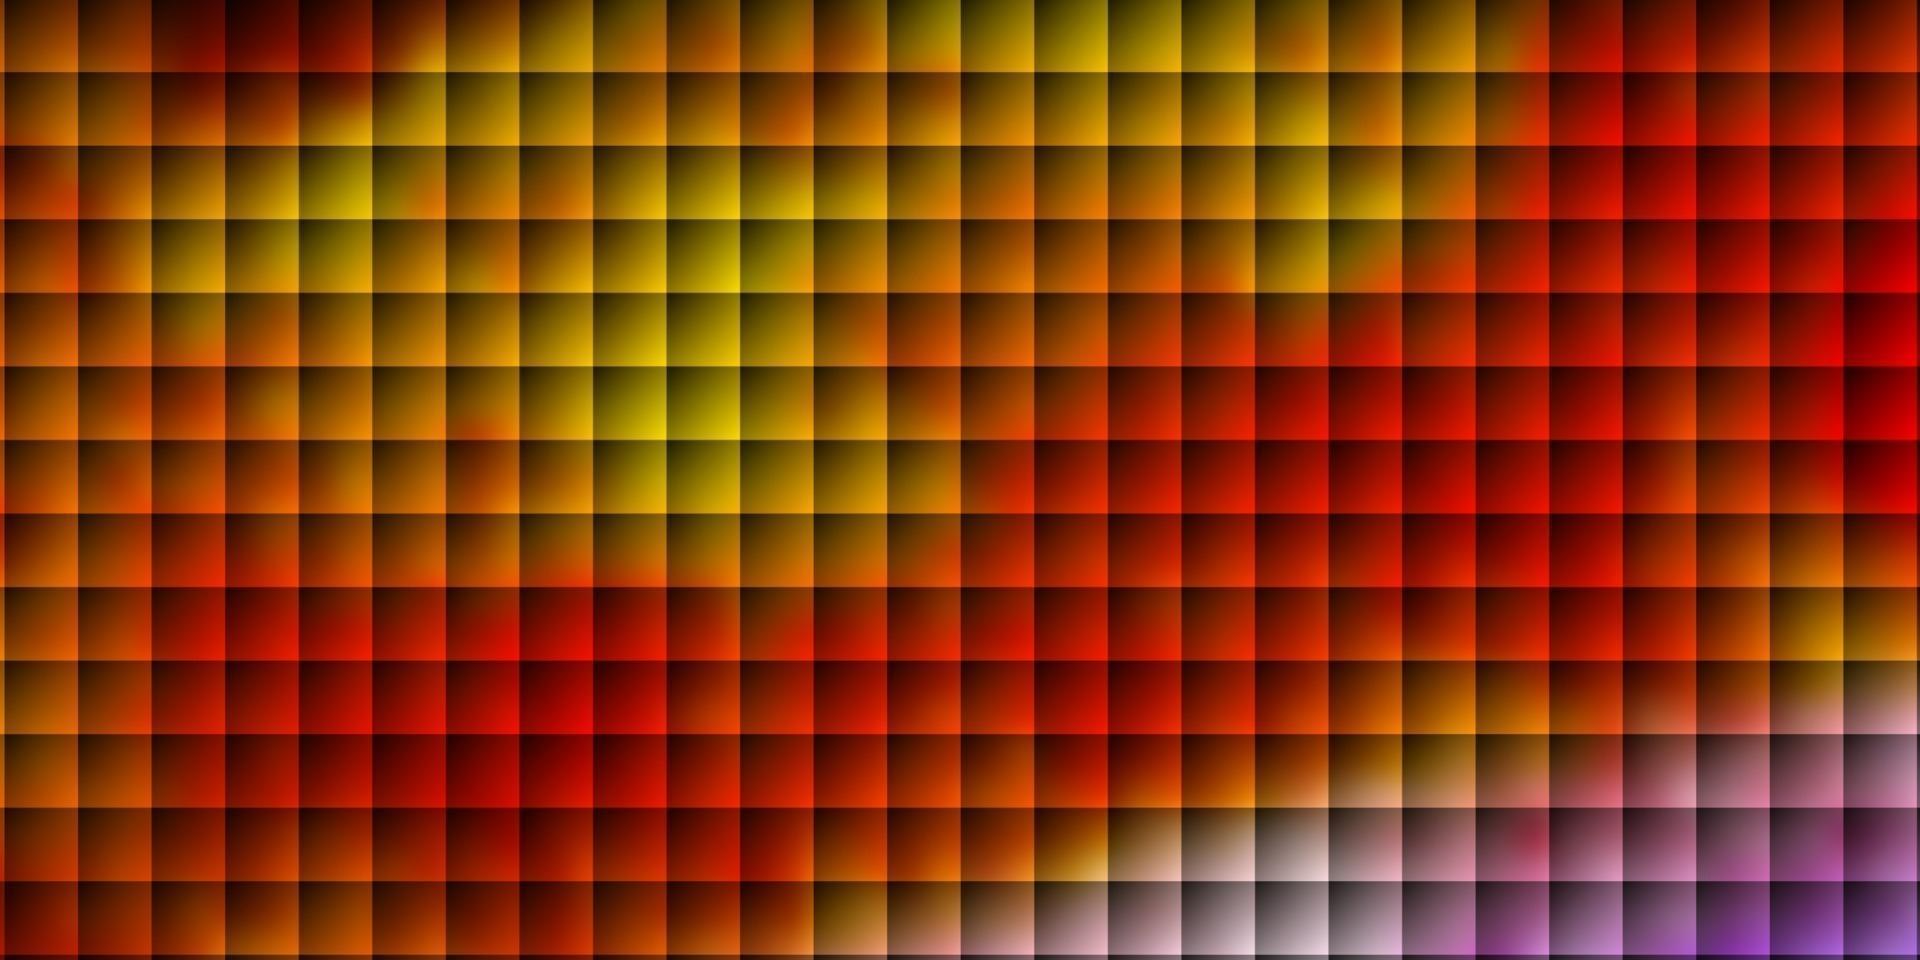 modelo de vetor multicolor de luz com retângulos.